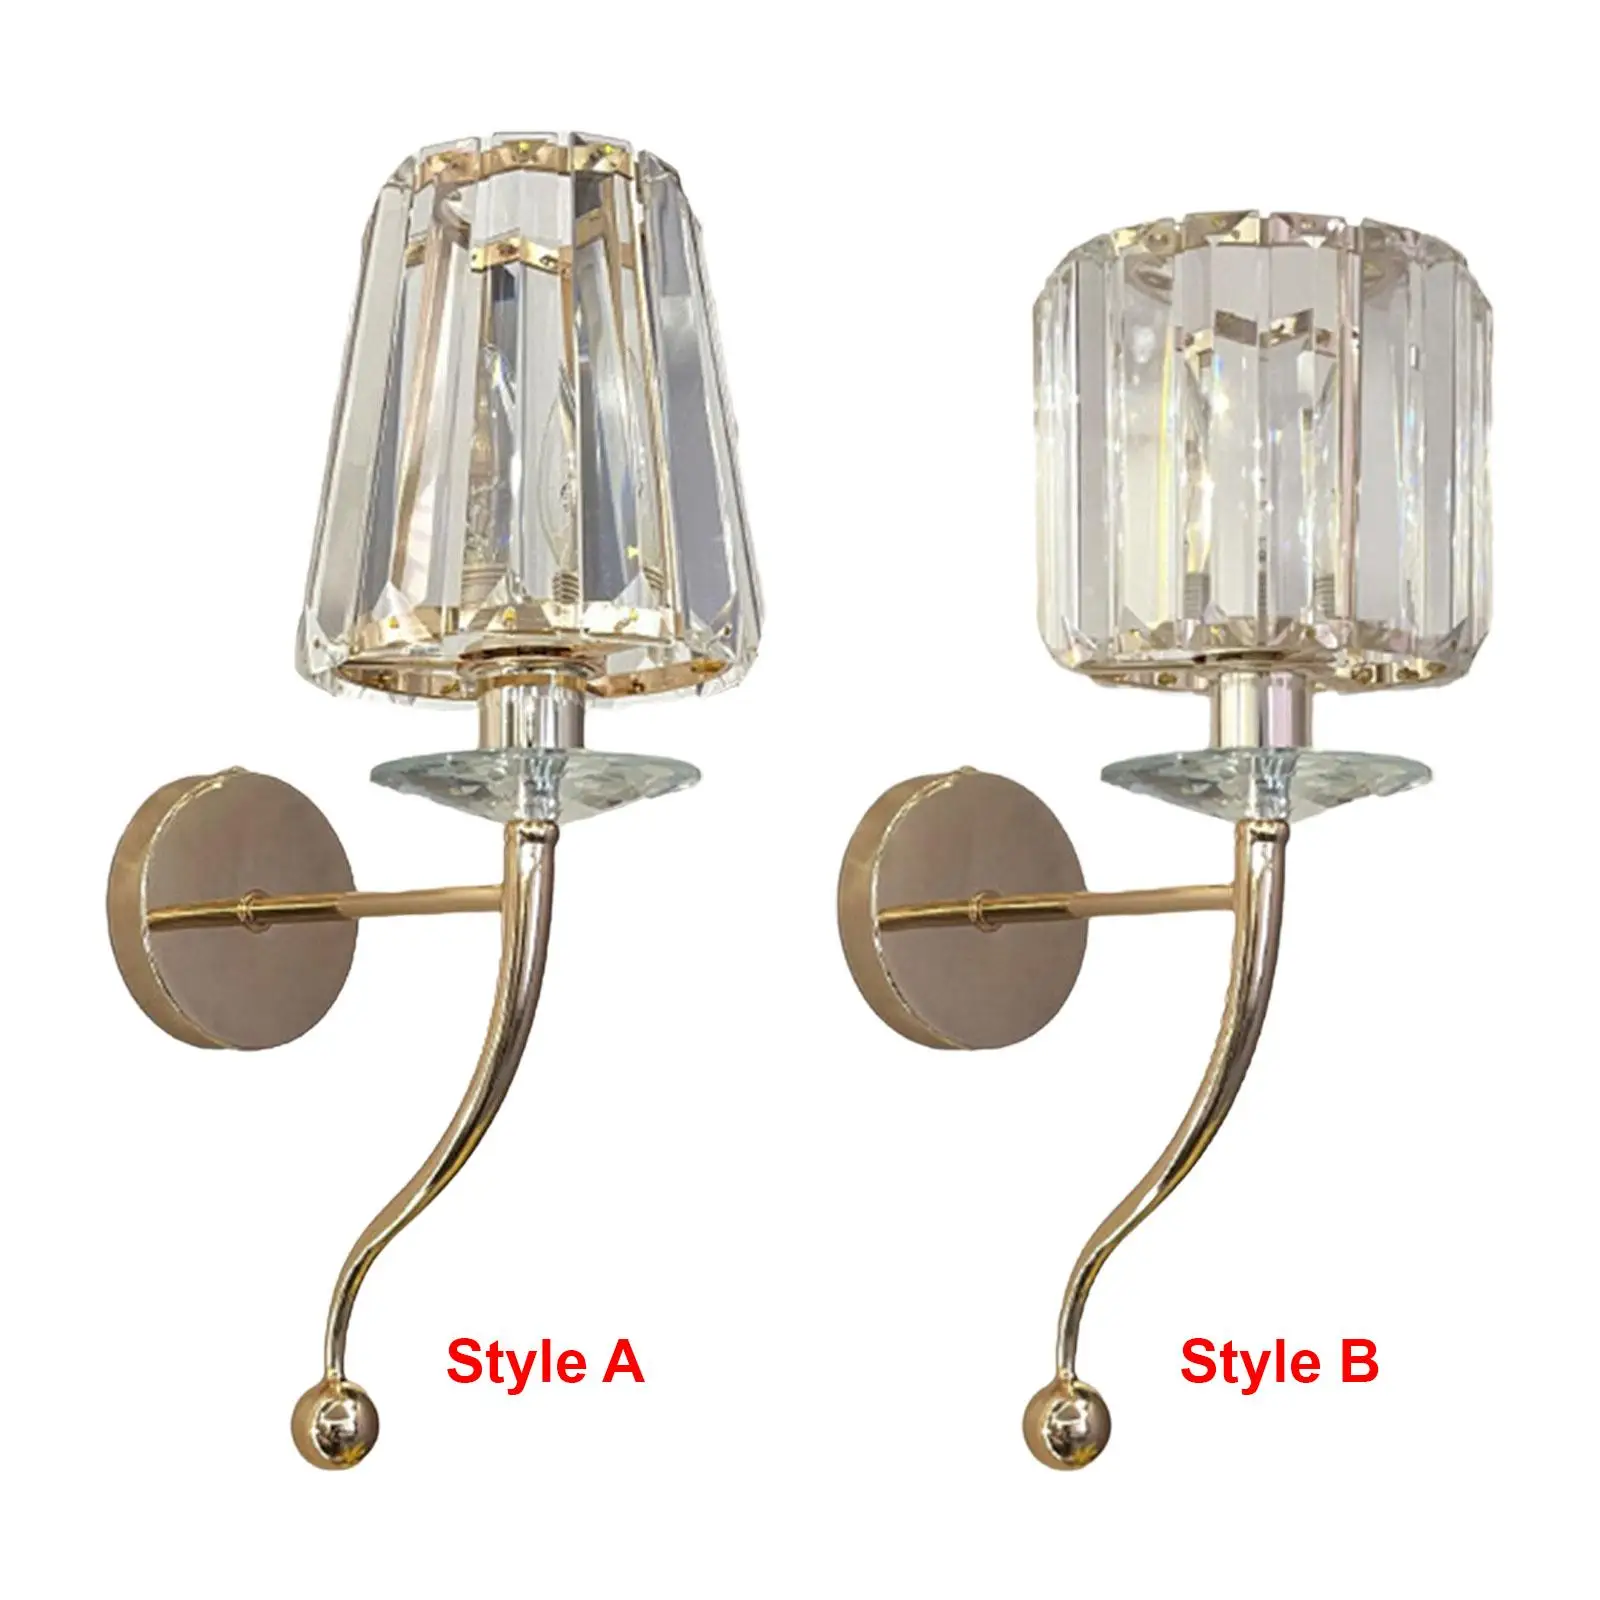 

Настенное бра-светильник, современный прикроватный шнур с лампочками (не входят в комплект) для столовой, прихожей, кухни, ванной комнаты, лофта